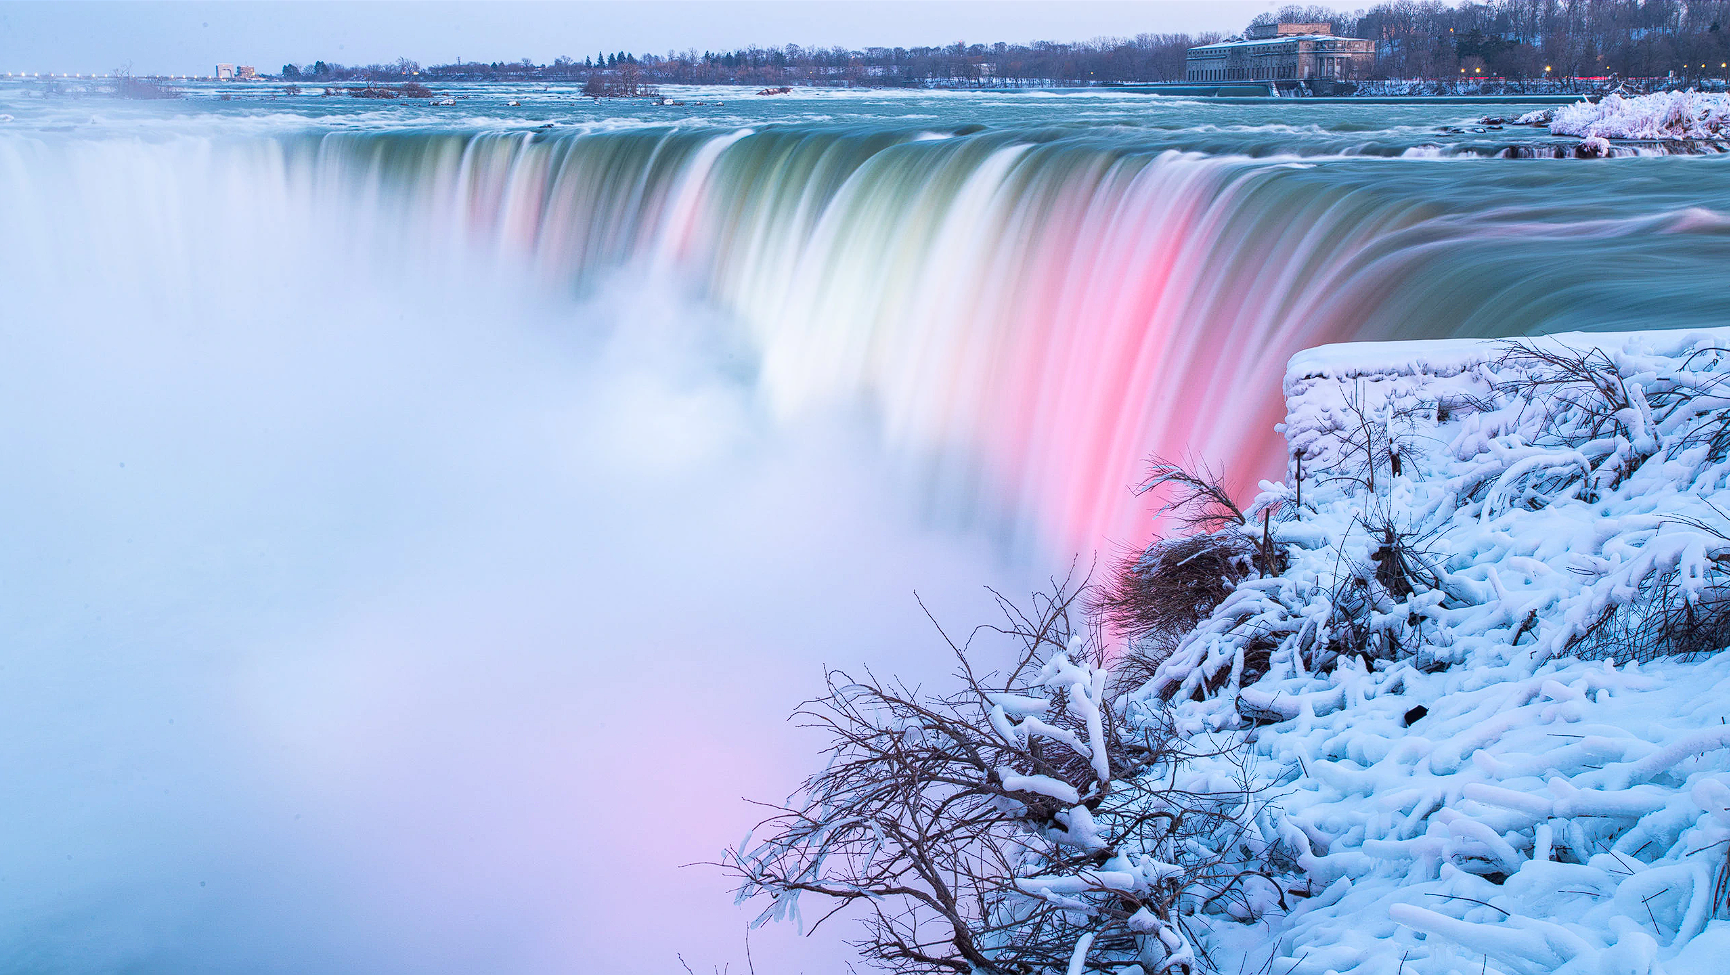 Keajaiban Alam Niagara Falls New York: Sejarah, Atraksi Wisata, Harga Tiket, dan Tips Pengunjung